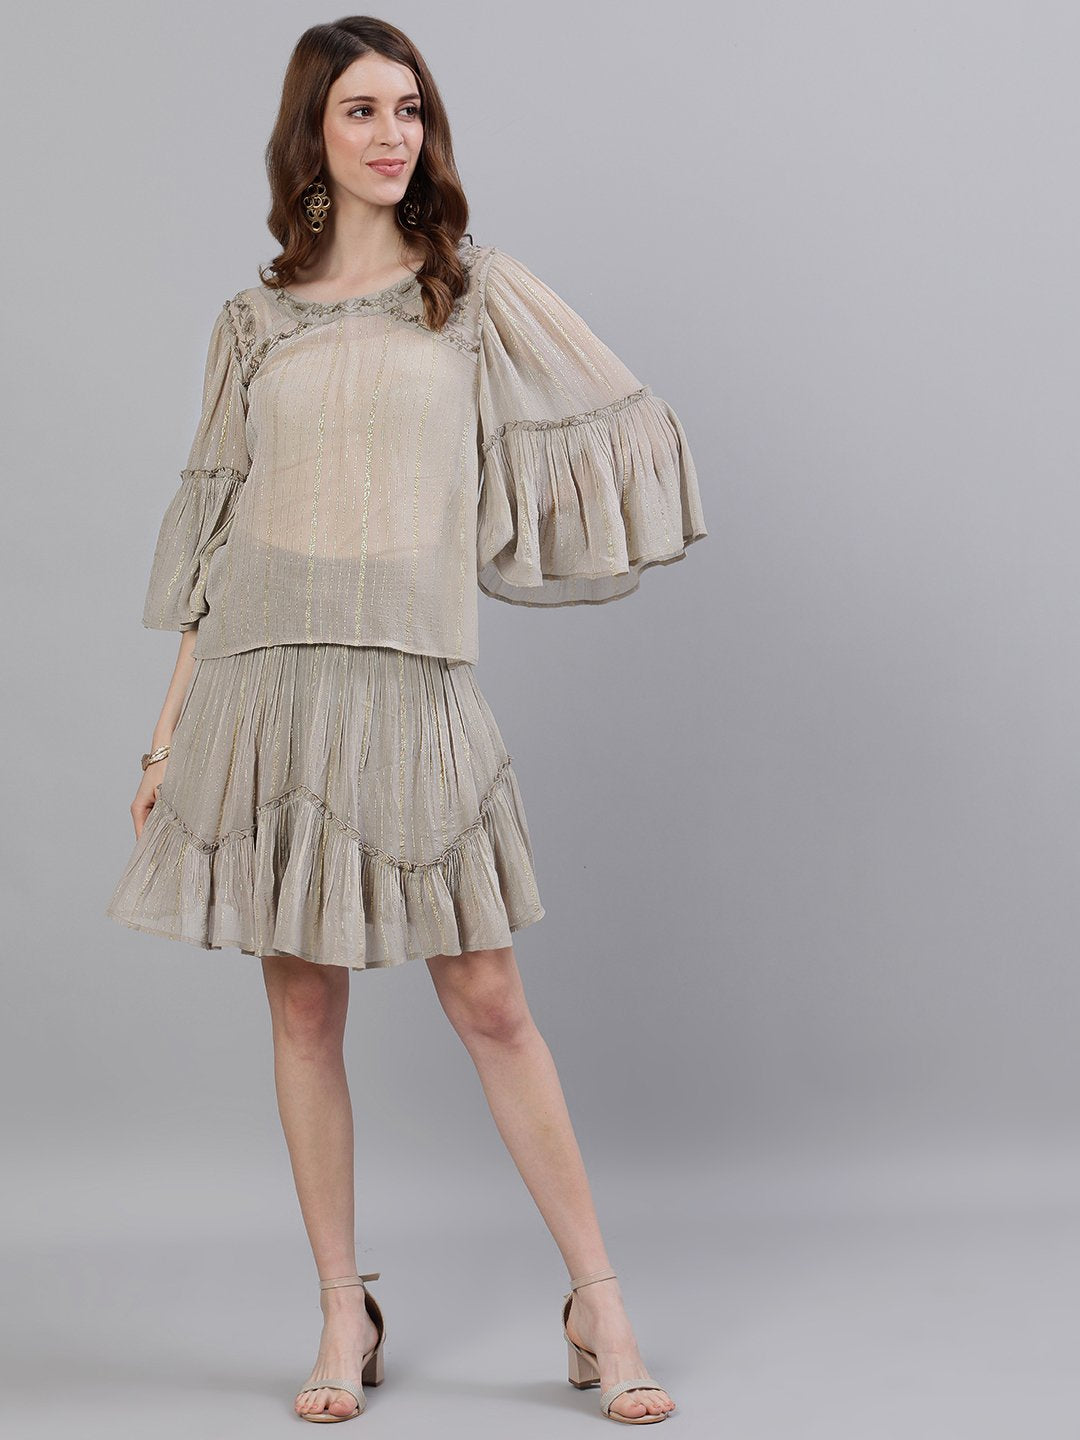 Ishin Women's Georgette Beige Lurex Embroidered Two Piece Dress